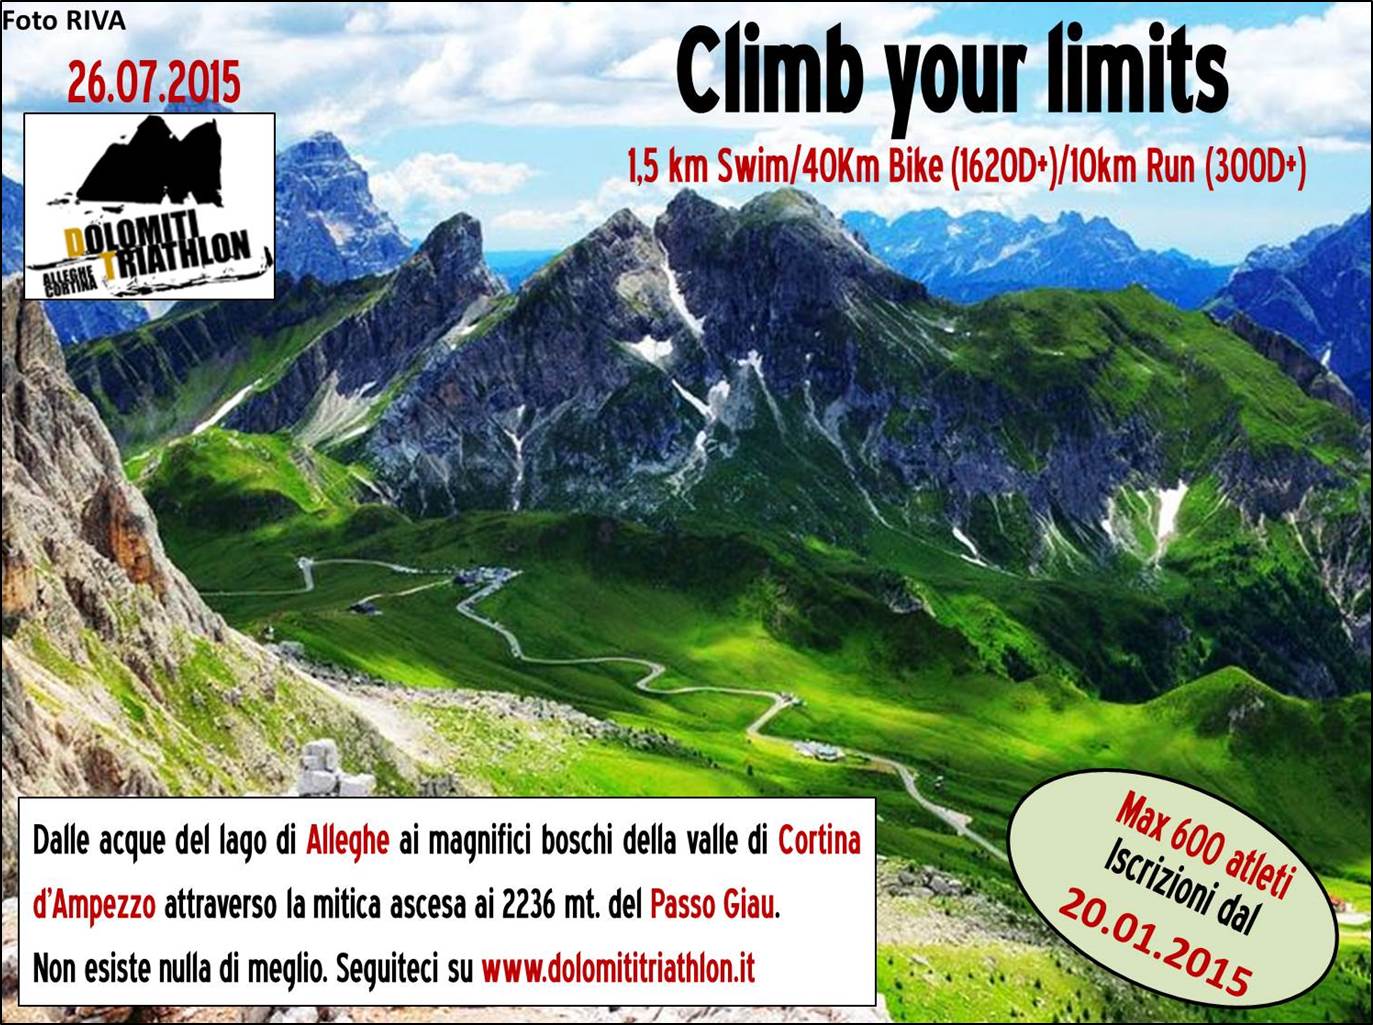 images/2015/foto_news/presentazione_gare_/climb_your_limits.jpg